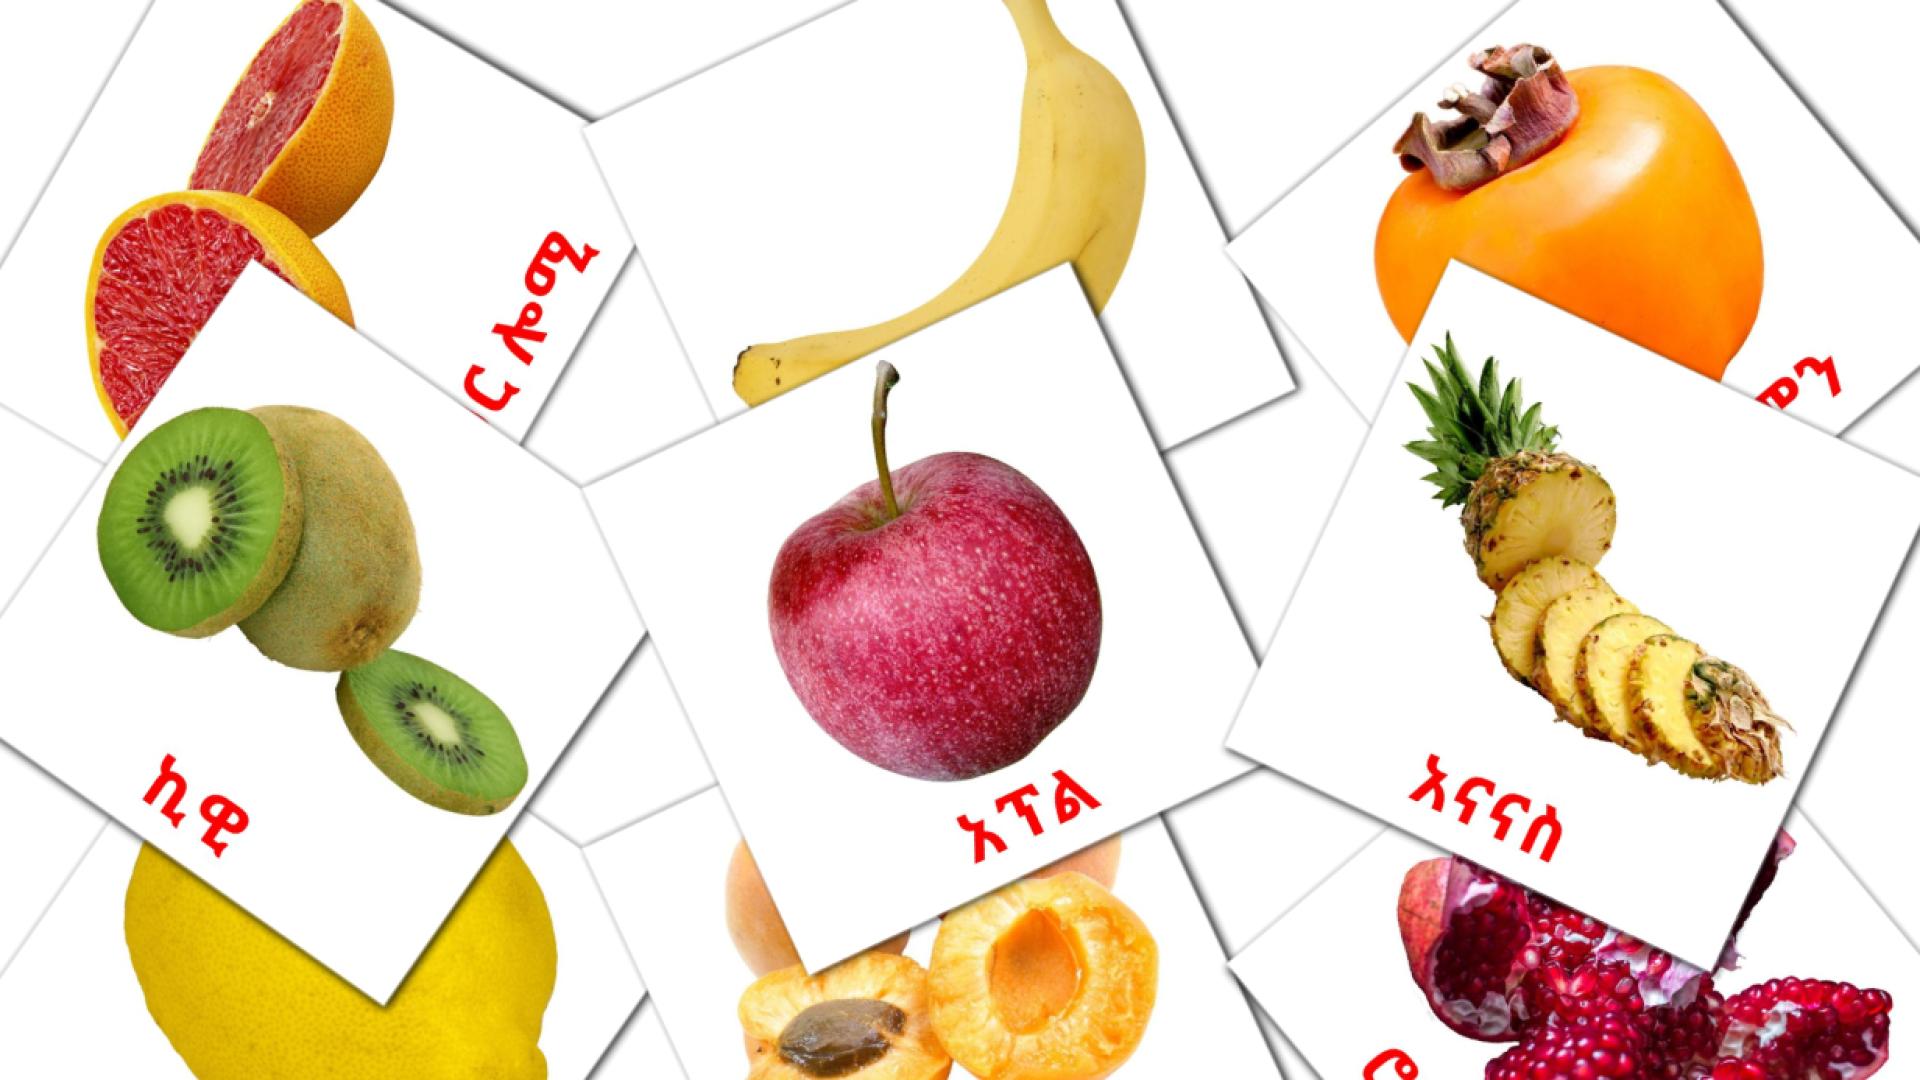 Obst - Amharische Vokabelkarten